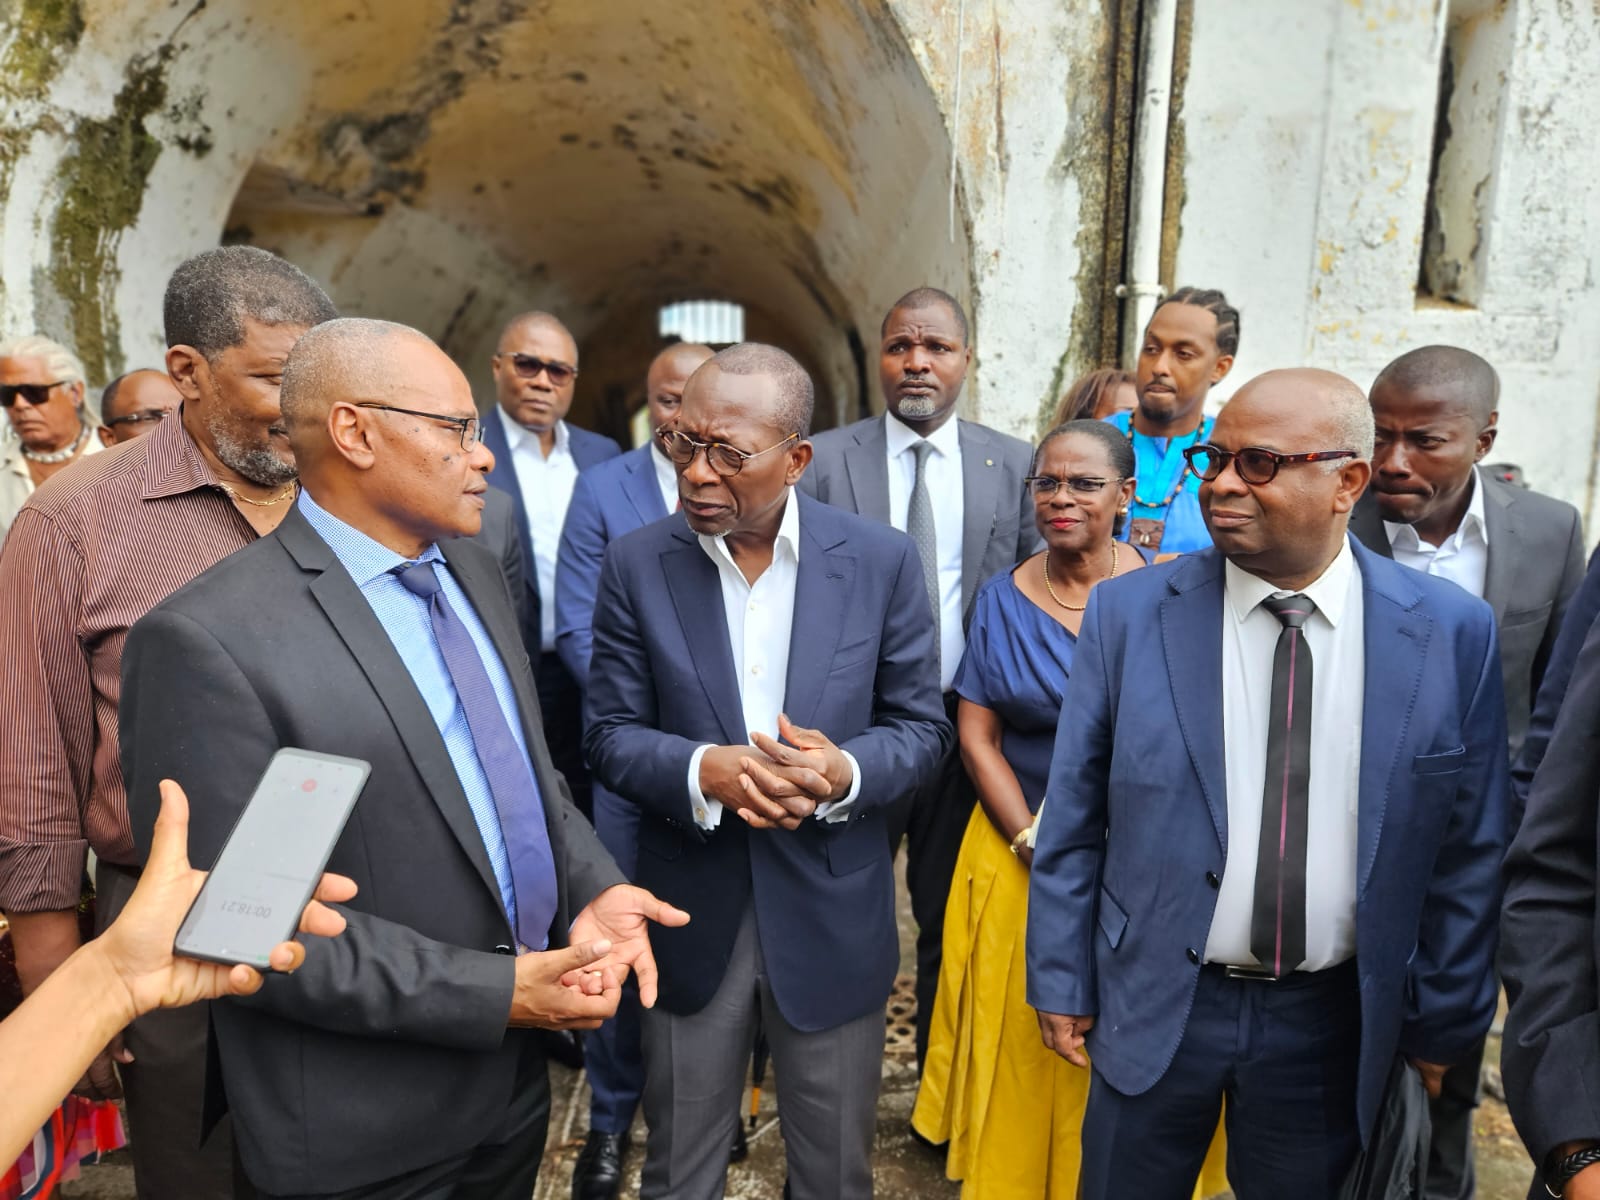     Le président du Bénin visite le fort Tartenson où était exilé le roi Béhanzin

